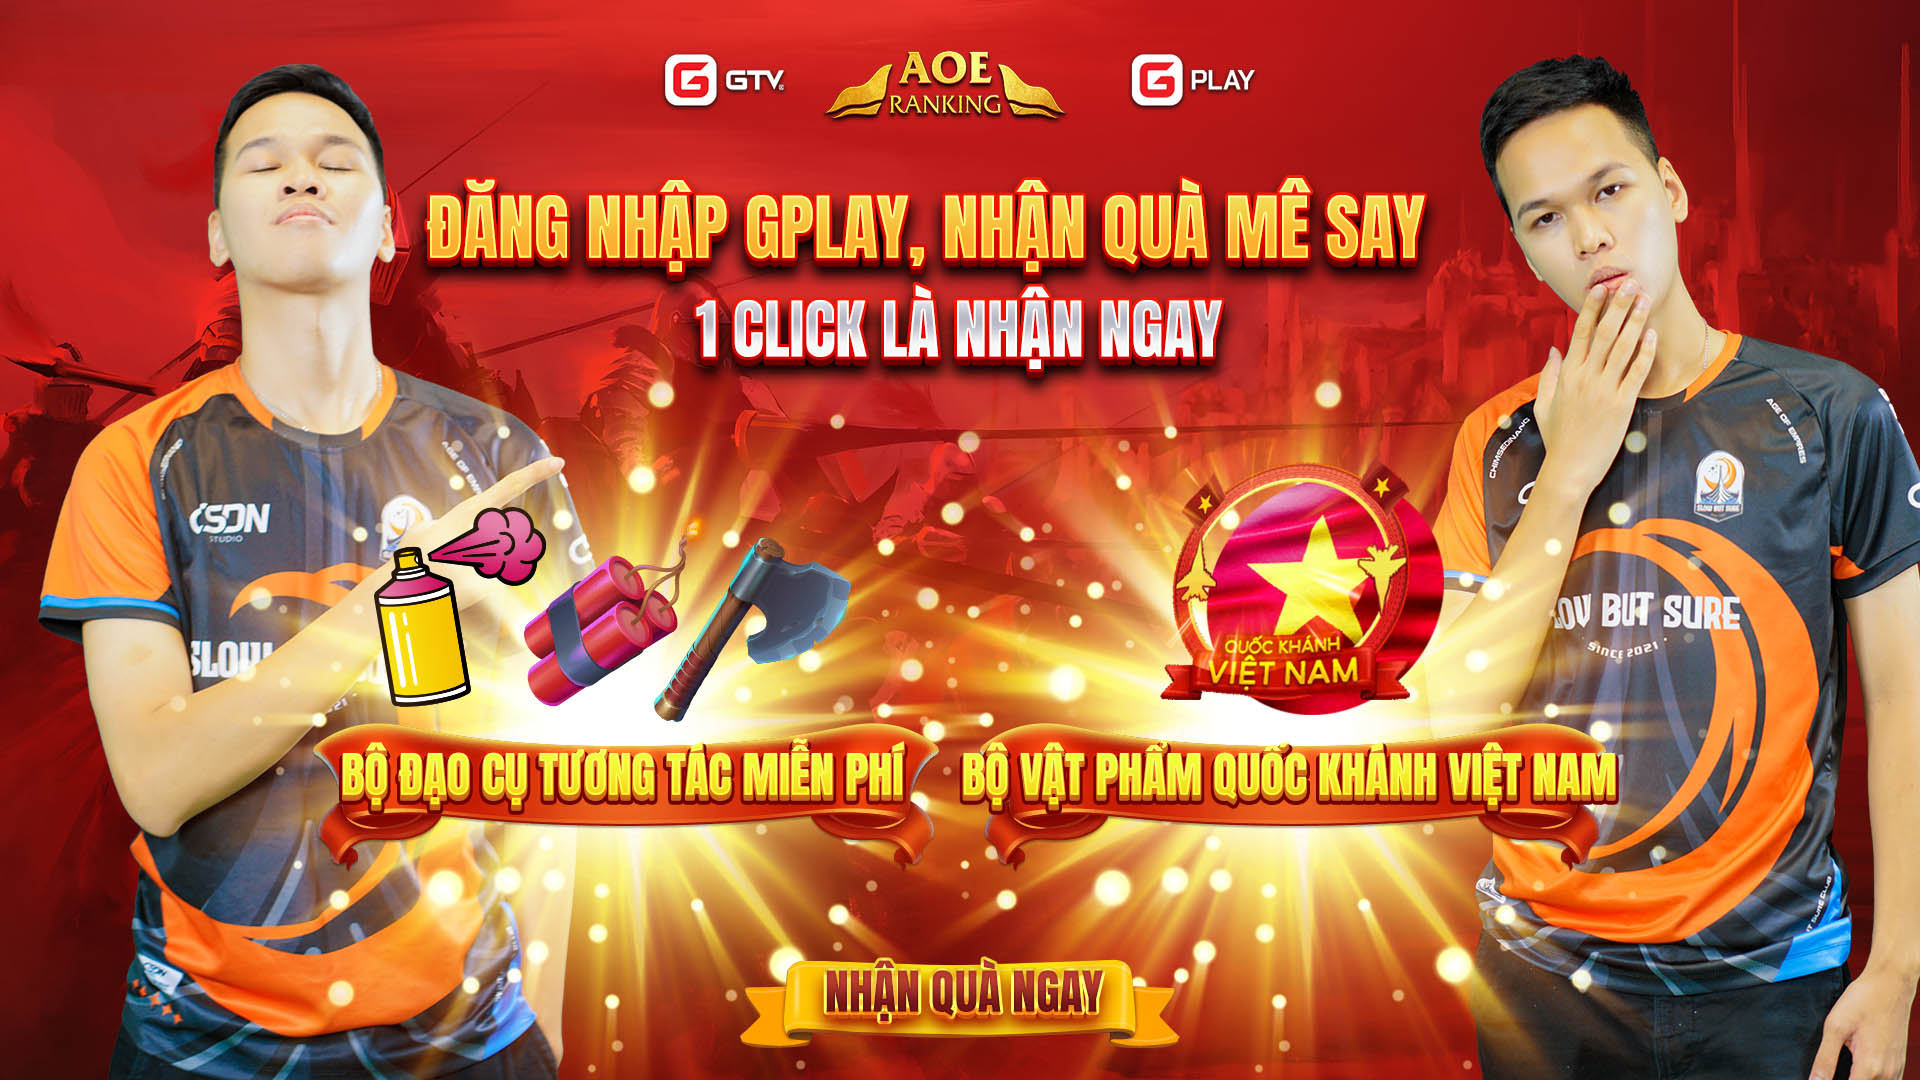 Chào mừng Quốc Khánh Việt Nam, GPlay tặng vật phẩm miễn phí cho toàn bộ game thủ trên nền tảng